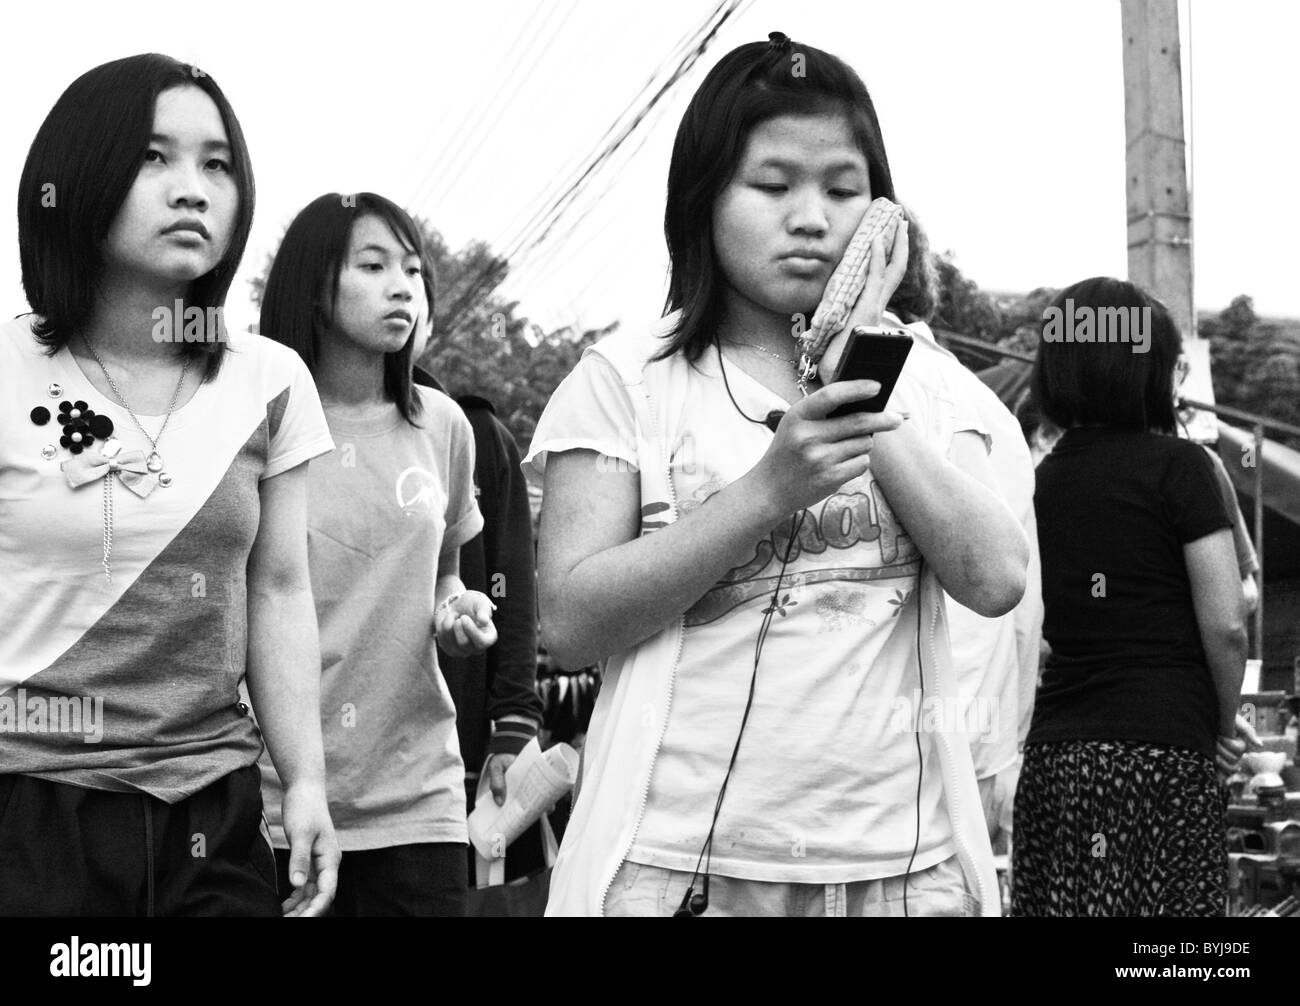 Schwarz / weiß Foto von drei jungen Thai-Frauen zu Fuß entlang einer Straße Stockfoto